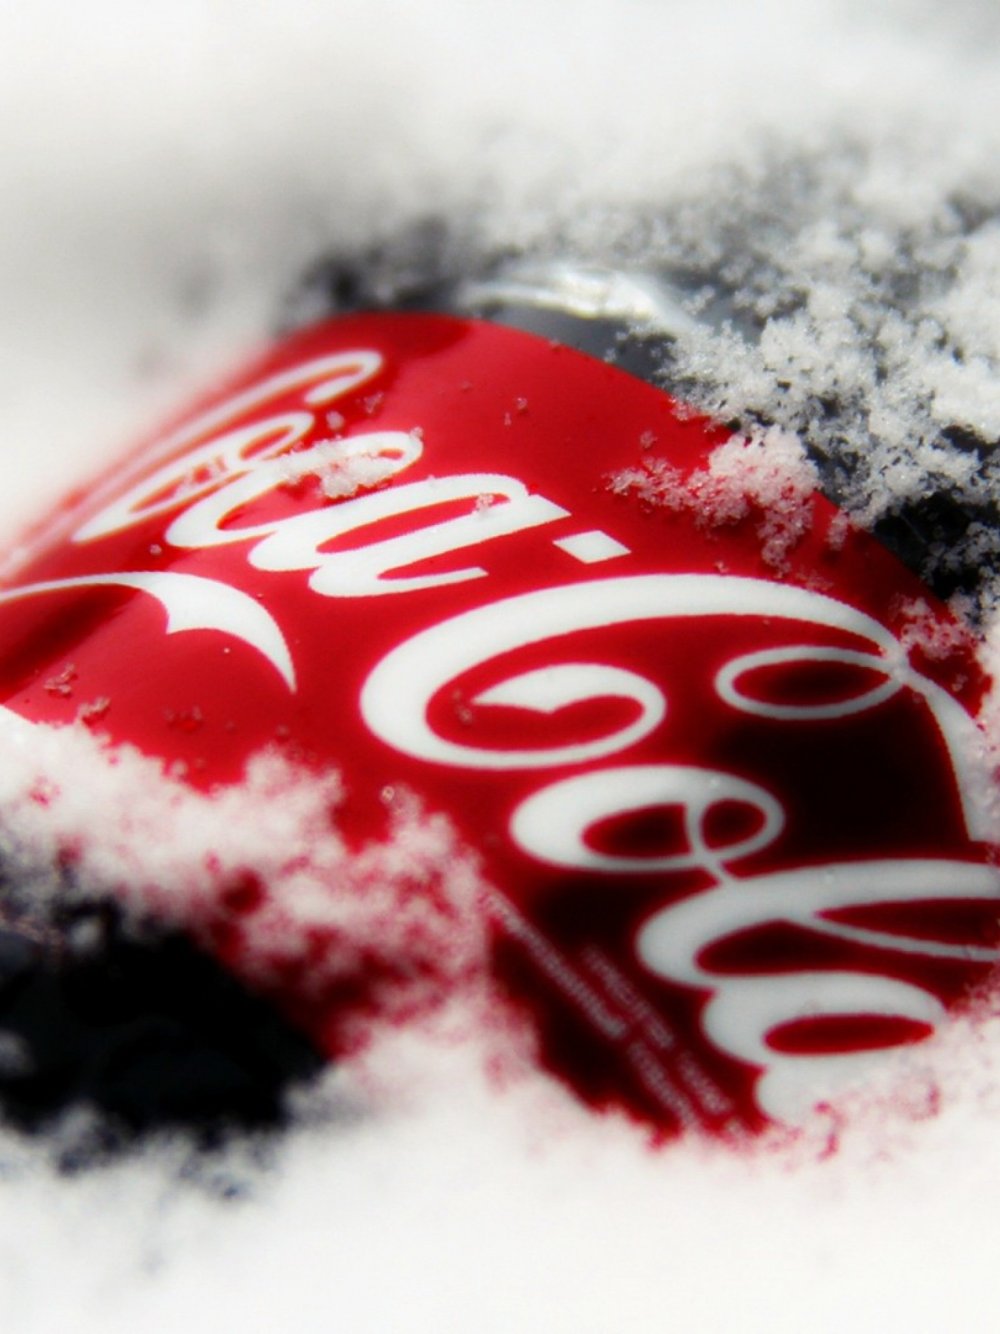 Реклама Кока колы